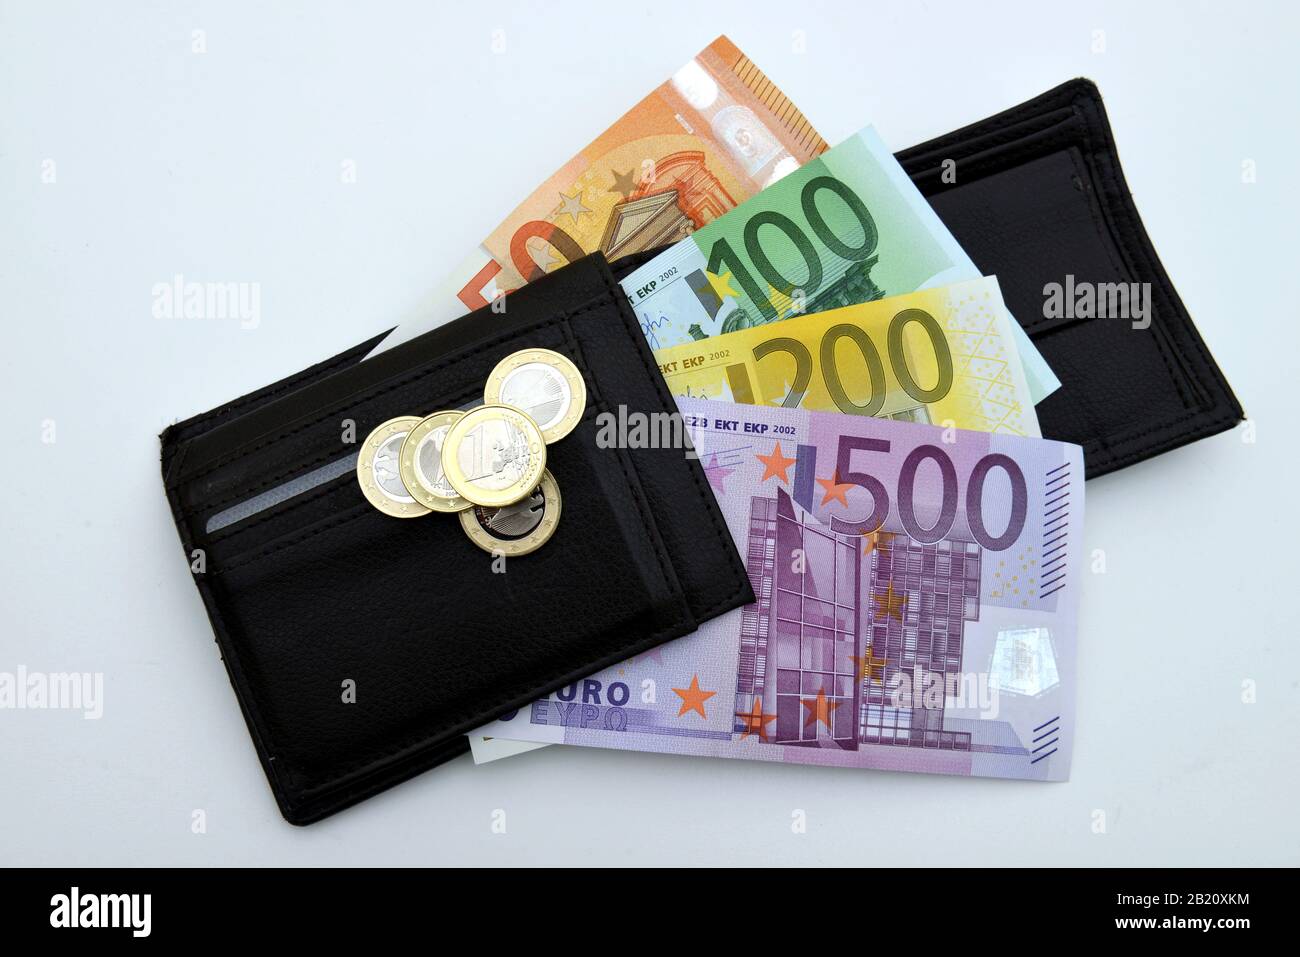 Portemonnaie, Euroscheine Stock Photo